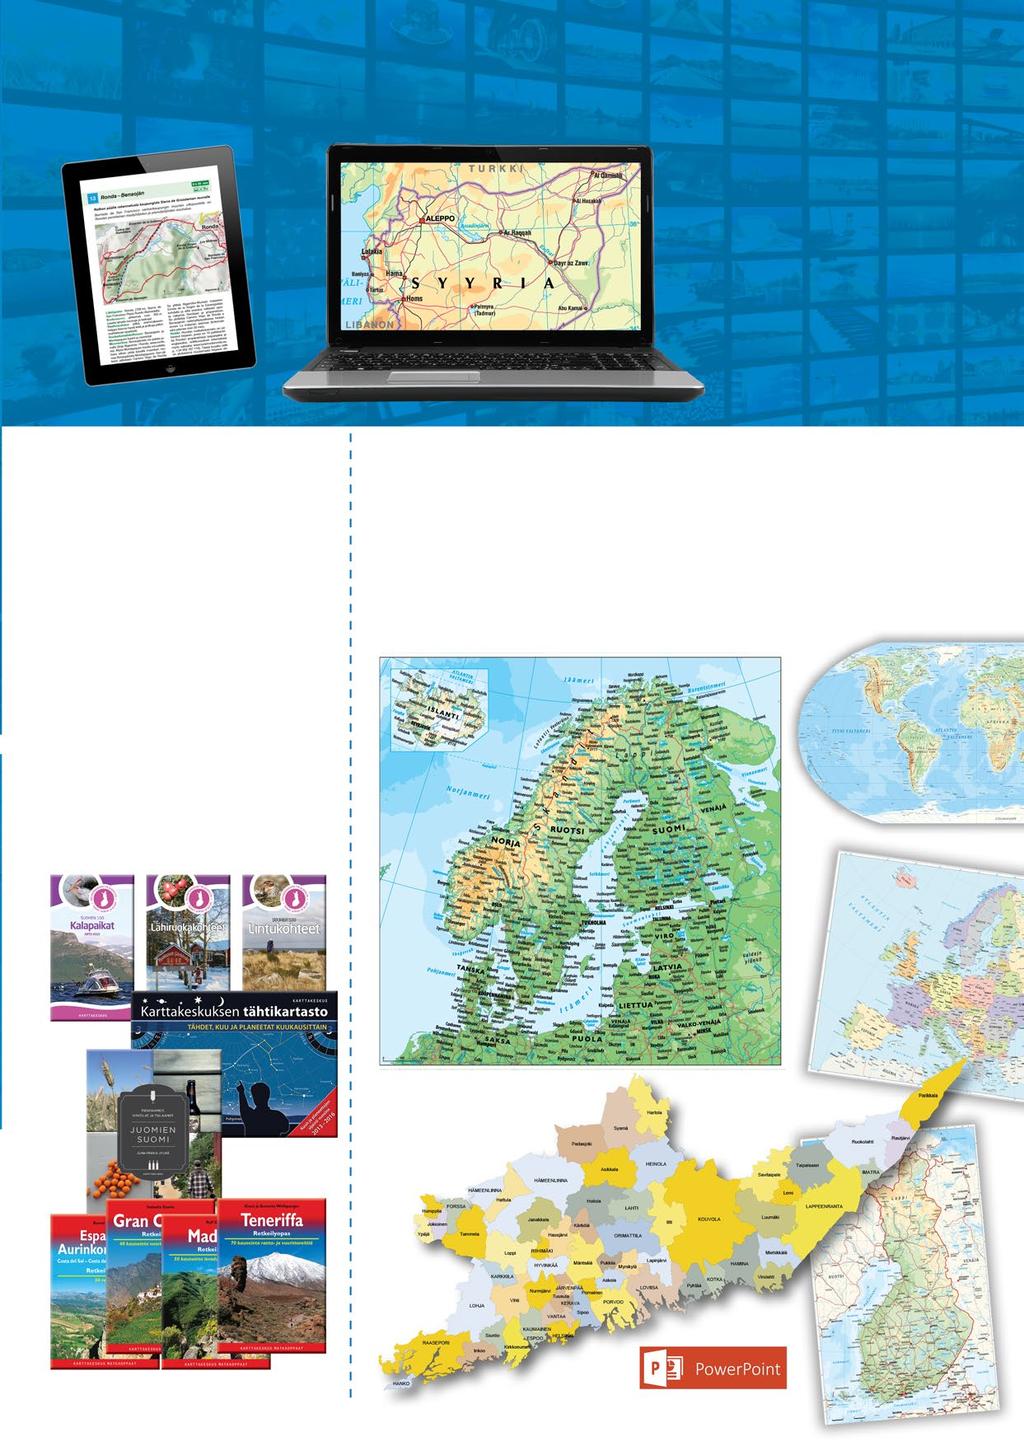 25 Digitaaliset tuotteet Tuttujen Loisto -navigointiohjelmien ja GT Reittikarttojen lisäksi valikomistamme löytyy e-kirjoja ja digitaalisia karttapohjia.